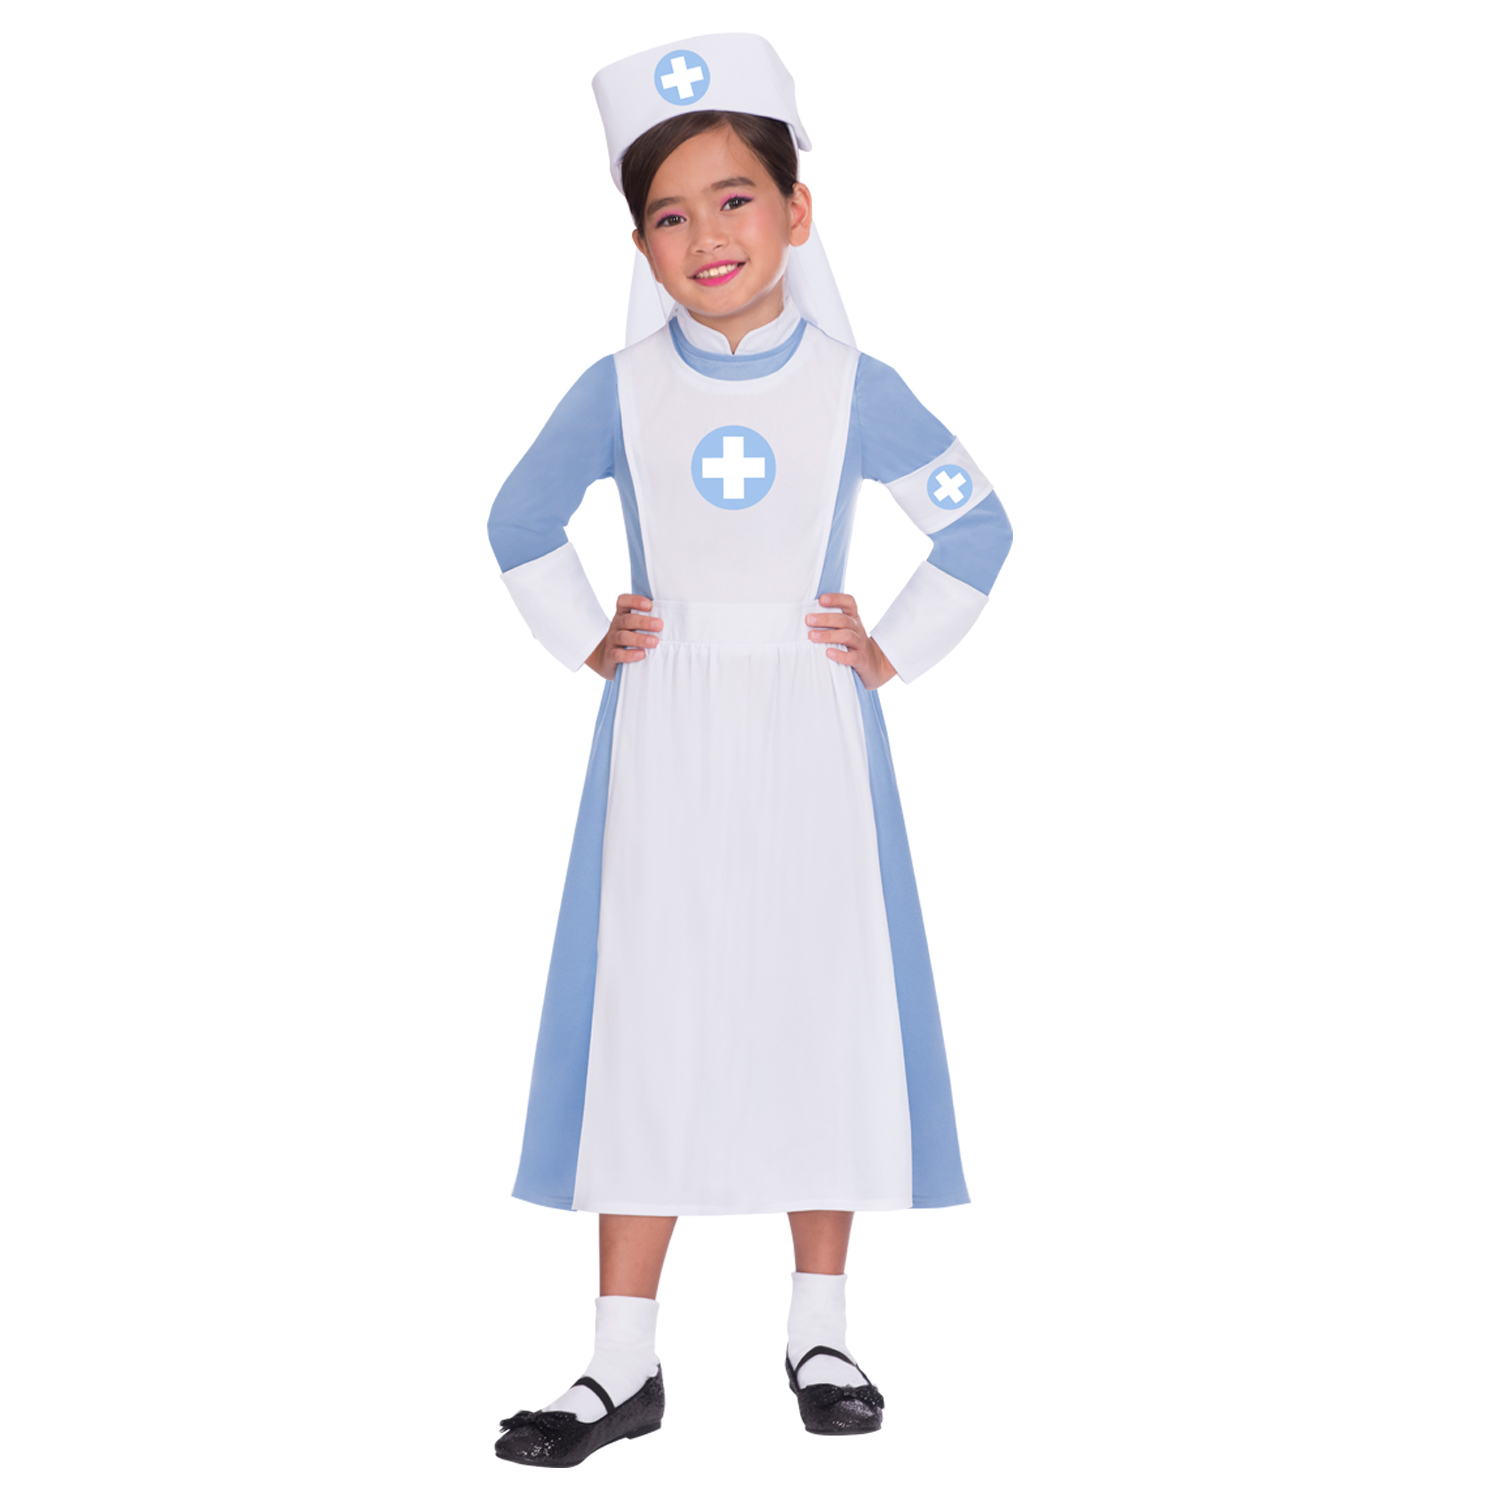 Vintage Nurse Costume - Age 6-8 Years - 1 PC. 